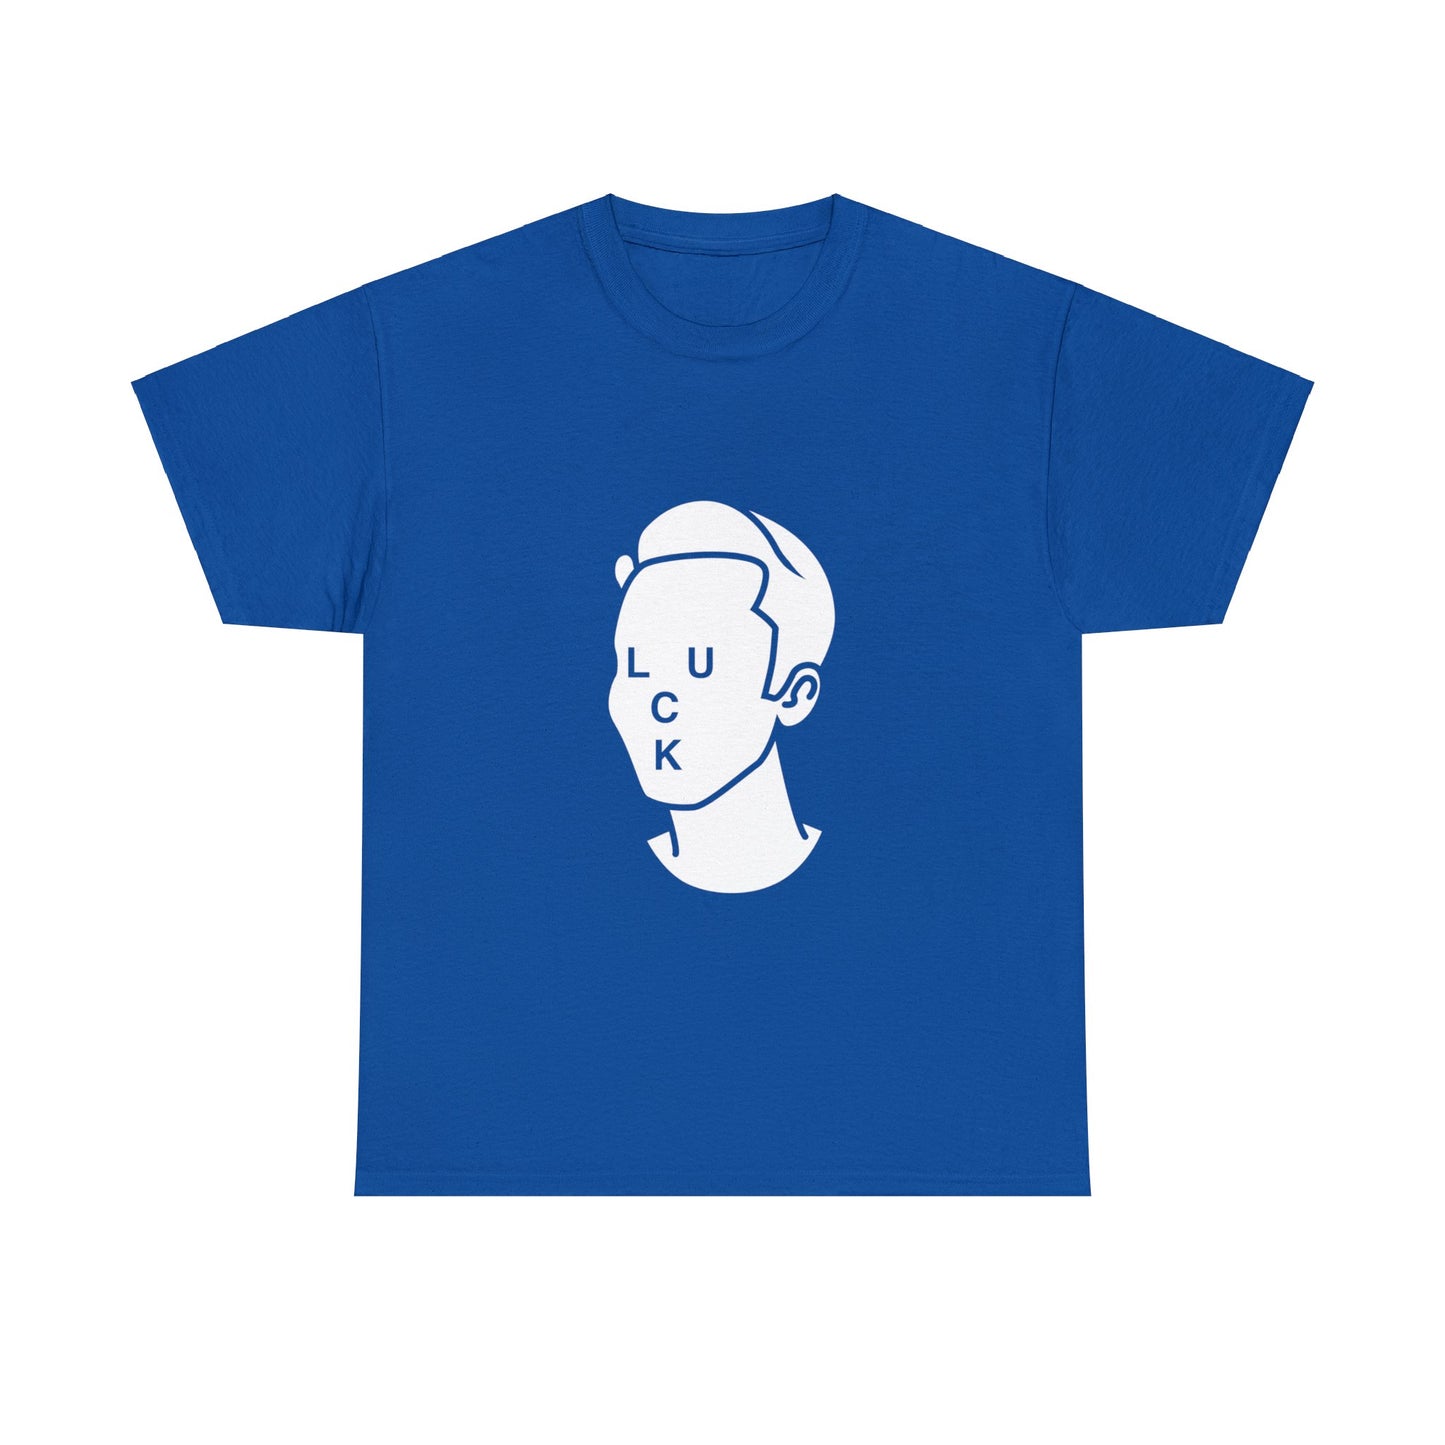 Tom Vek Luck UK blue T-shirt